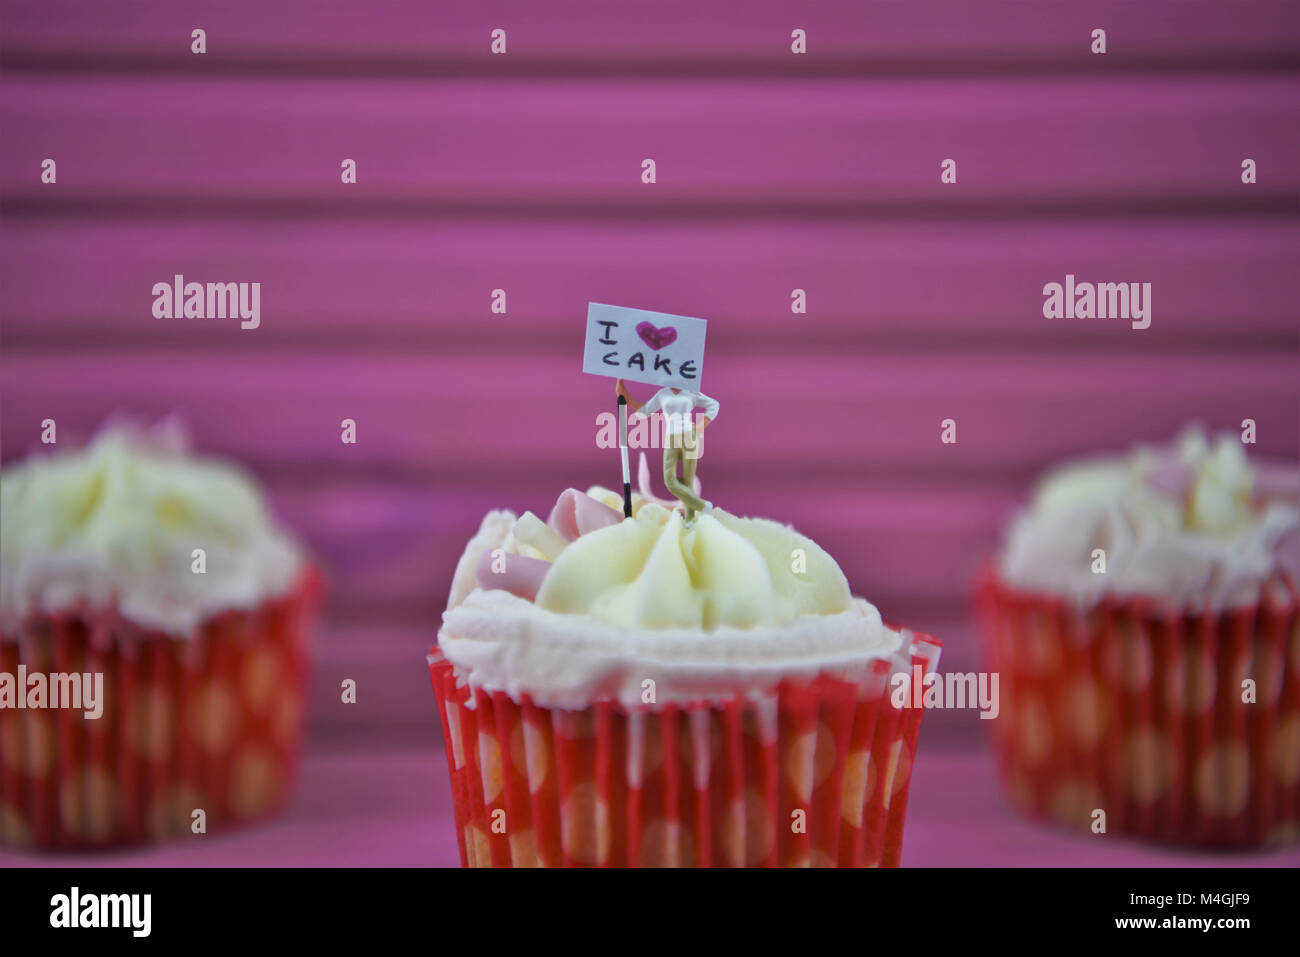 Food cupcakes avec love heart shapes et miniature signe pour i love cake Banque D'Images